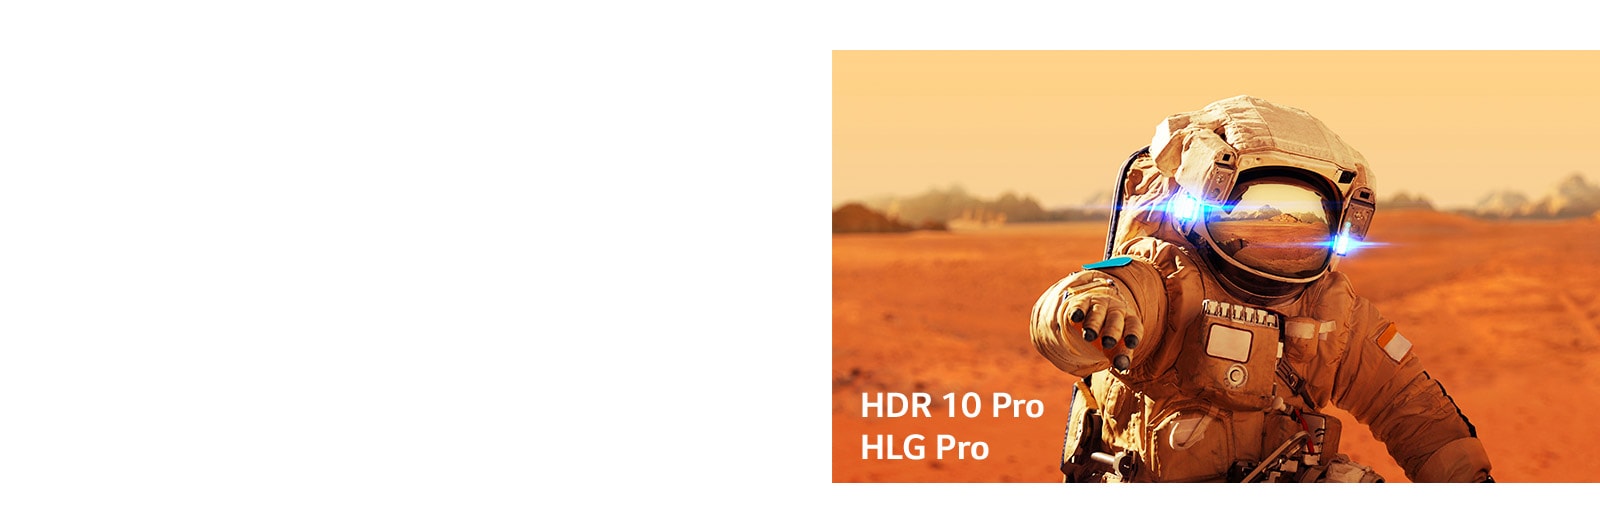 «Железный человек» от Marvel, небольшие таблички с логотипами HLG pro и HDR 10 Pro